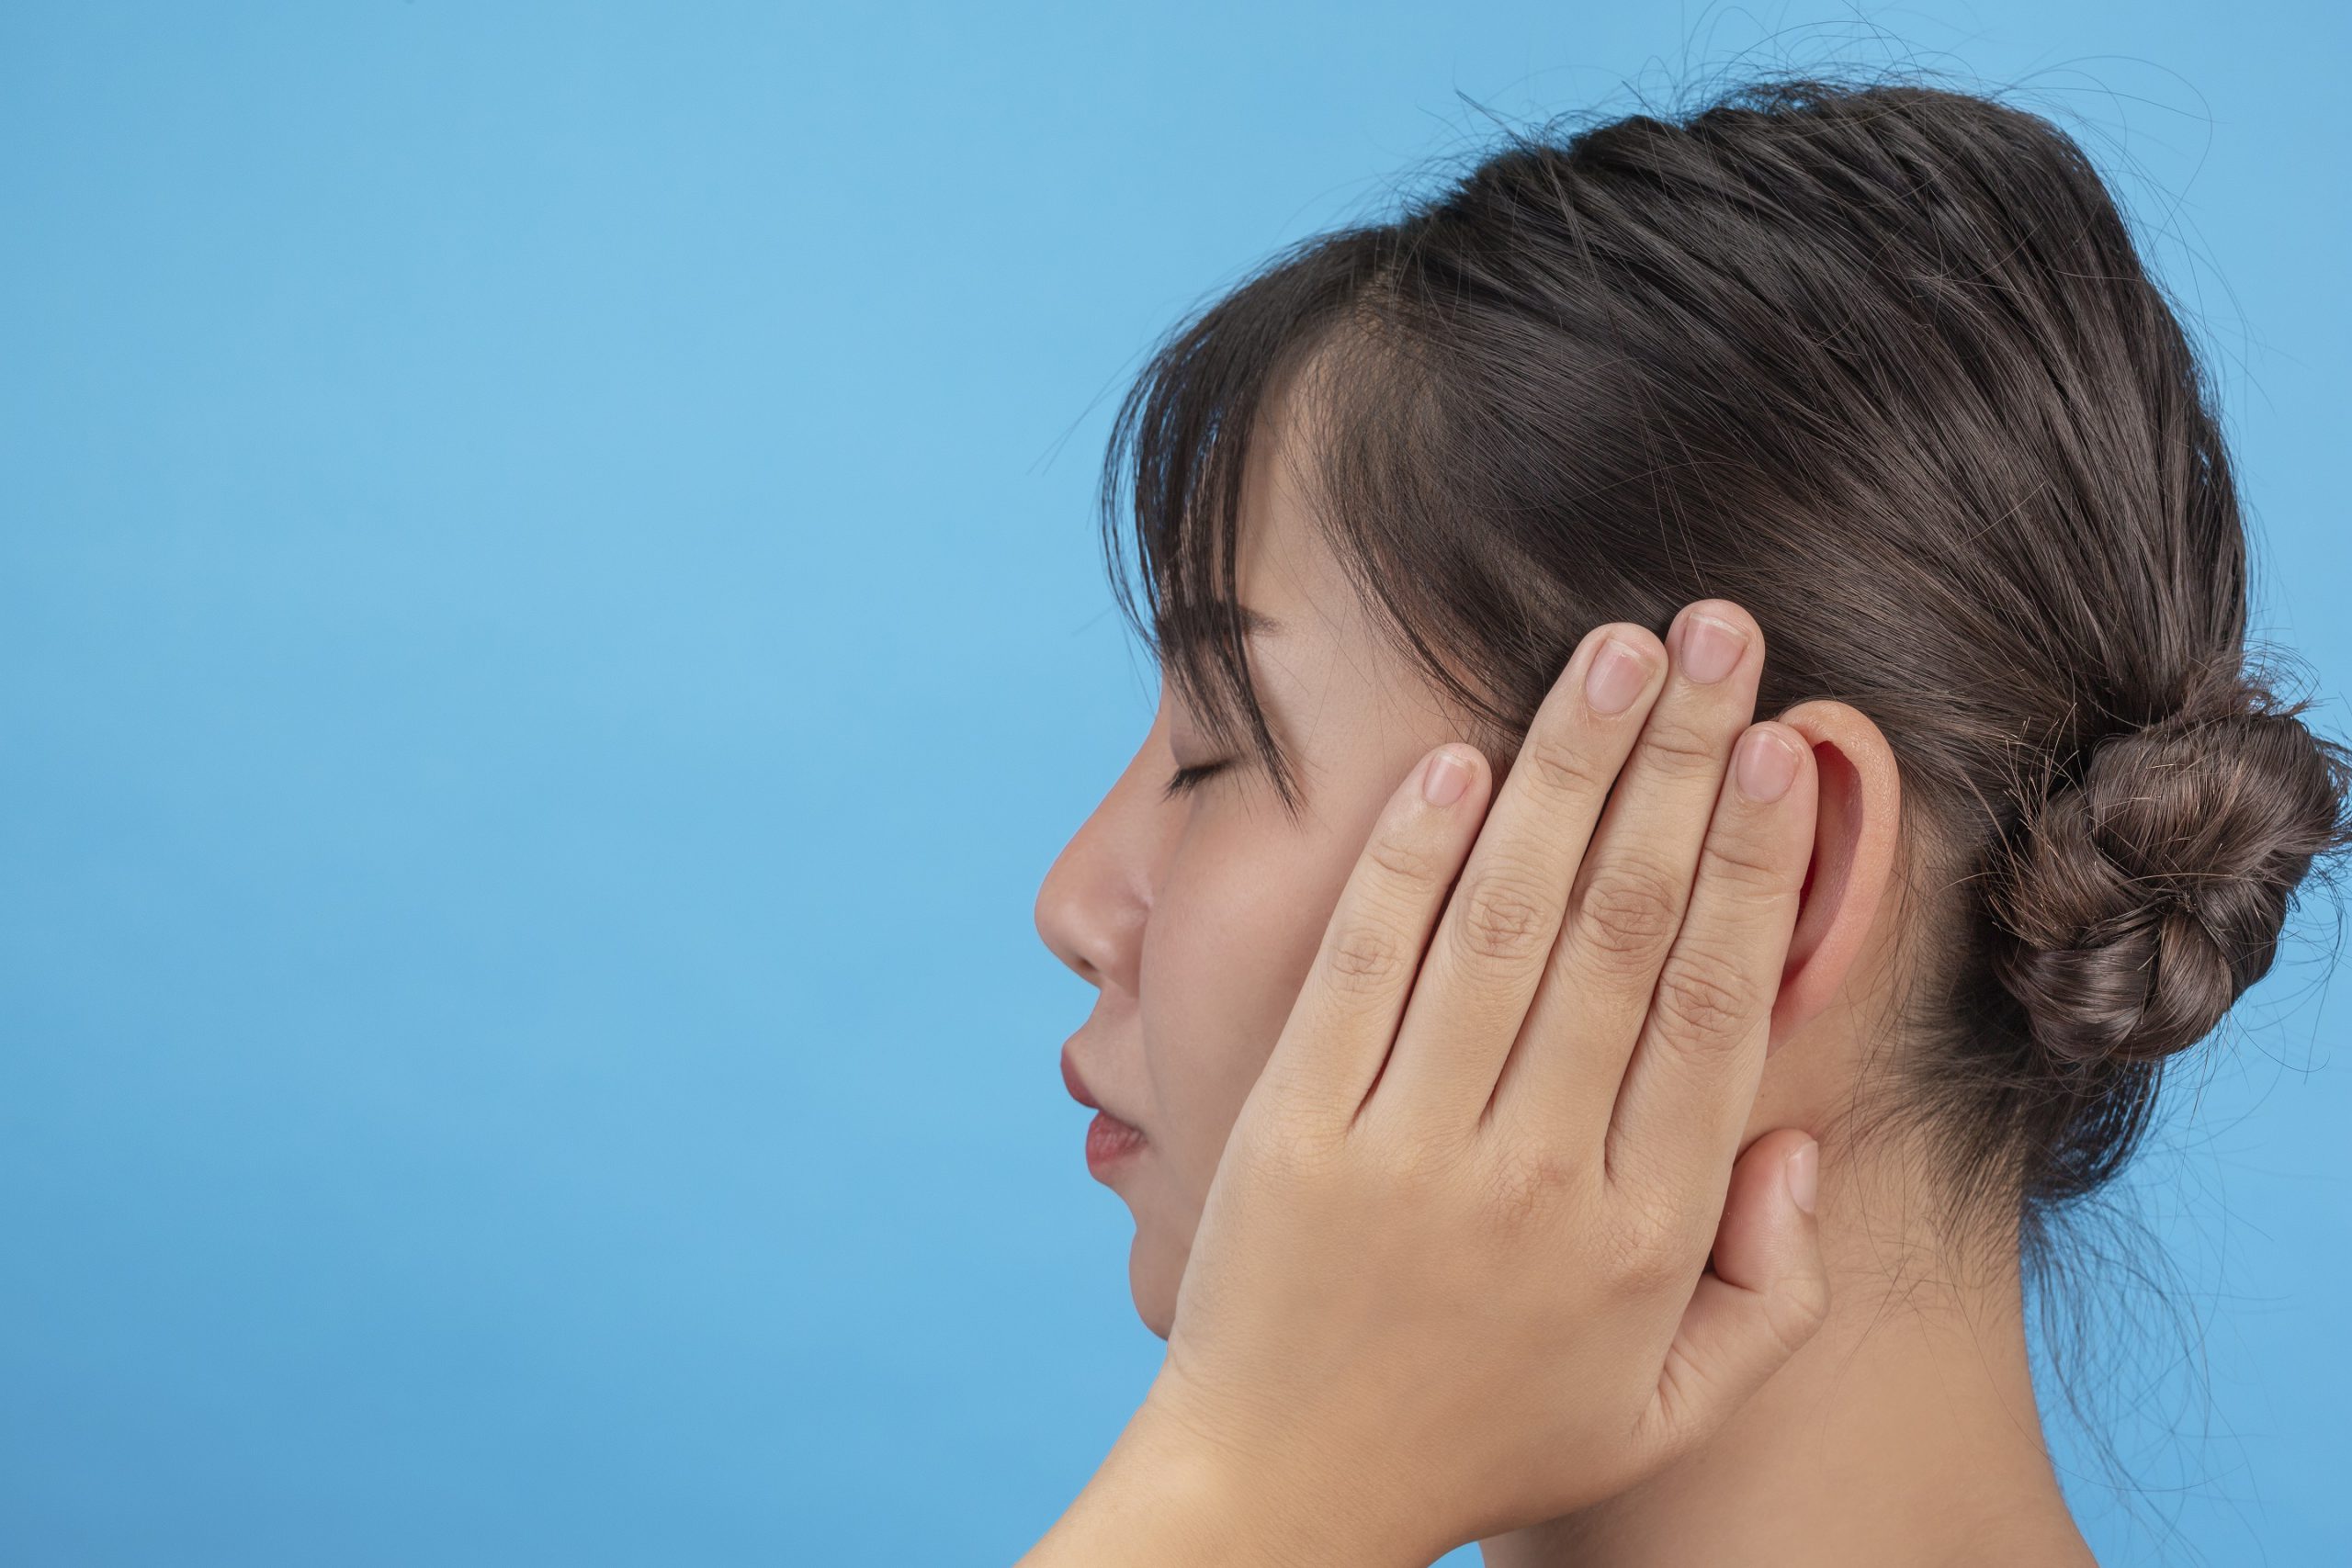 Tatilde kulak sağlığını tehdit eden faktörlere dikkat!